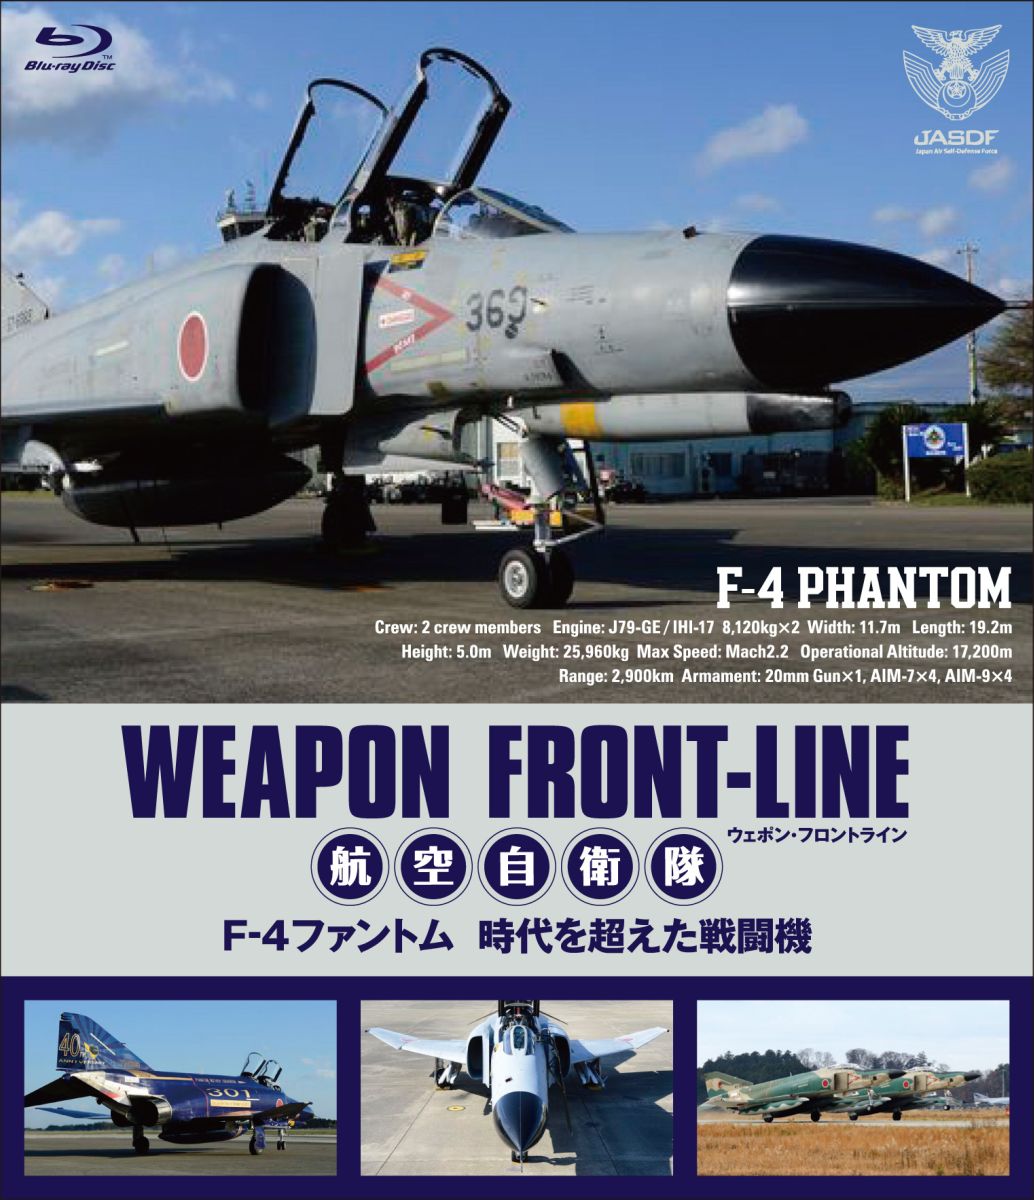 ウェポン・フロントライン 航空自衛隊 F-4ファントム 時代を超えた戦闘機【Blu-ray】